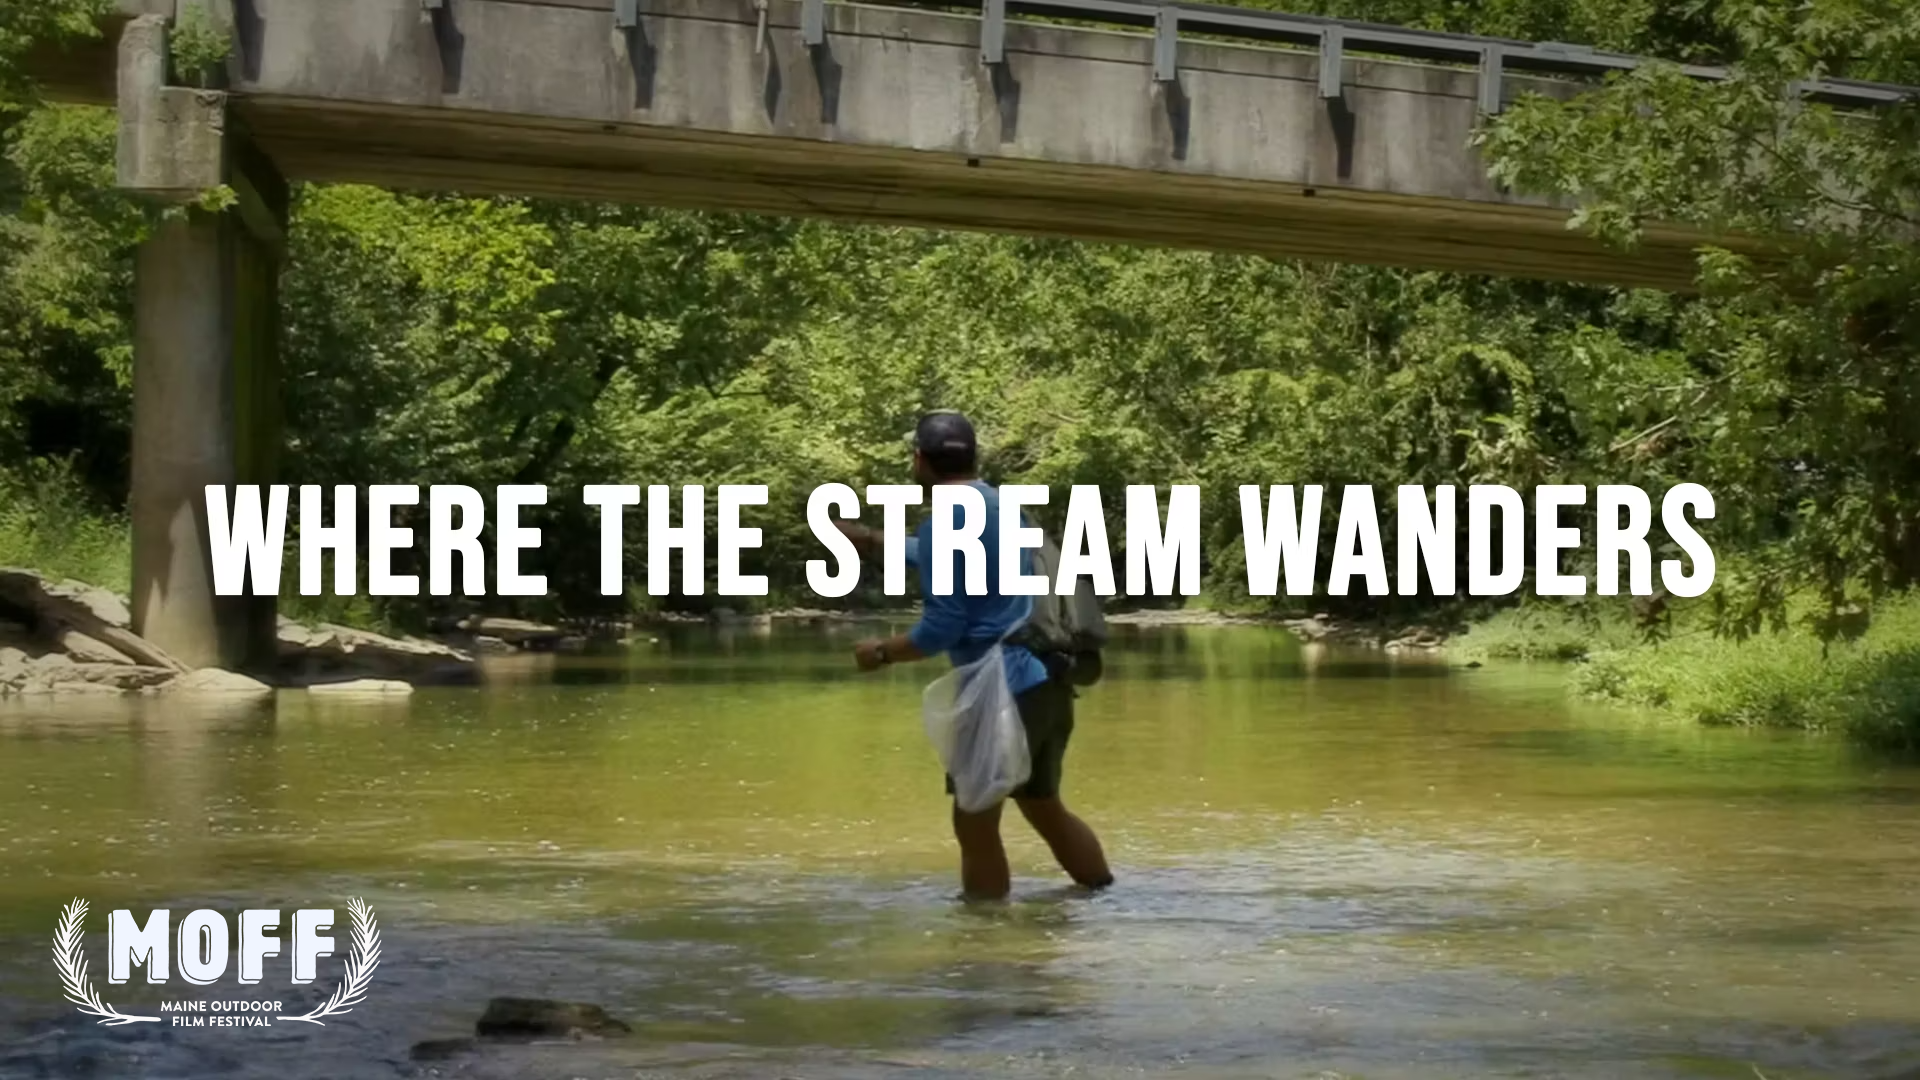 Where The Stream Wanders|https://vimeo.com/846605509/4a6e760396?share=copy